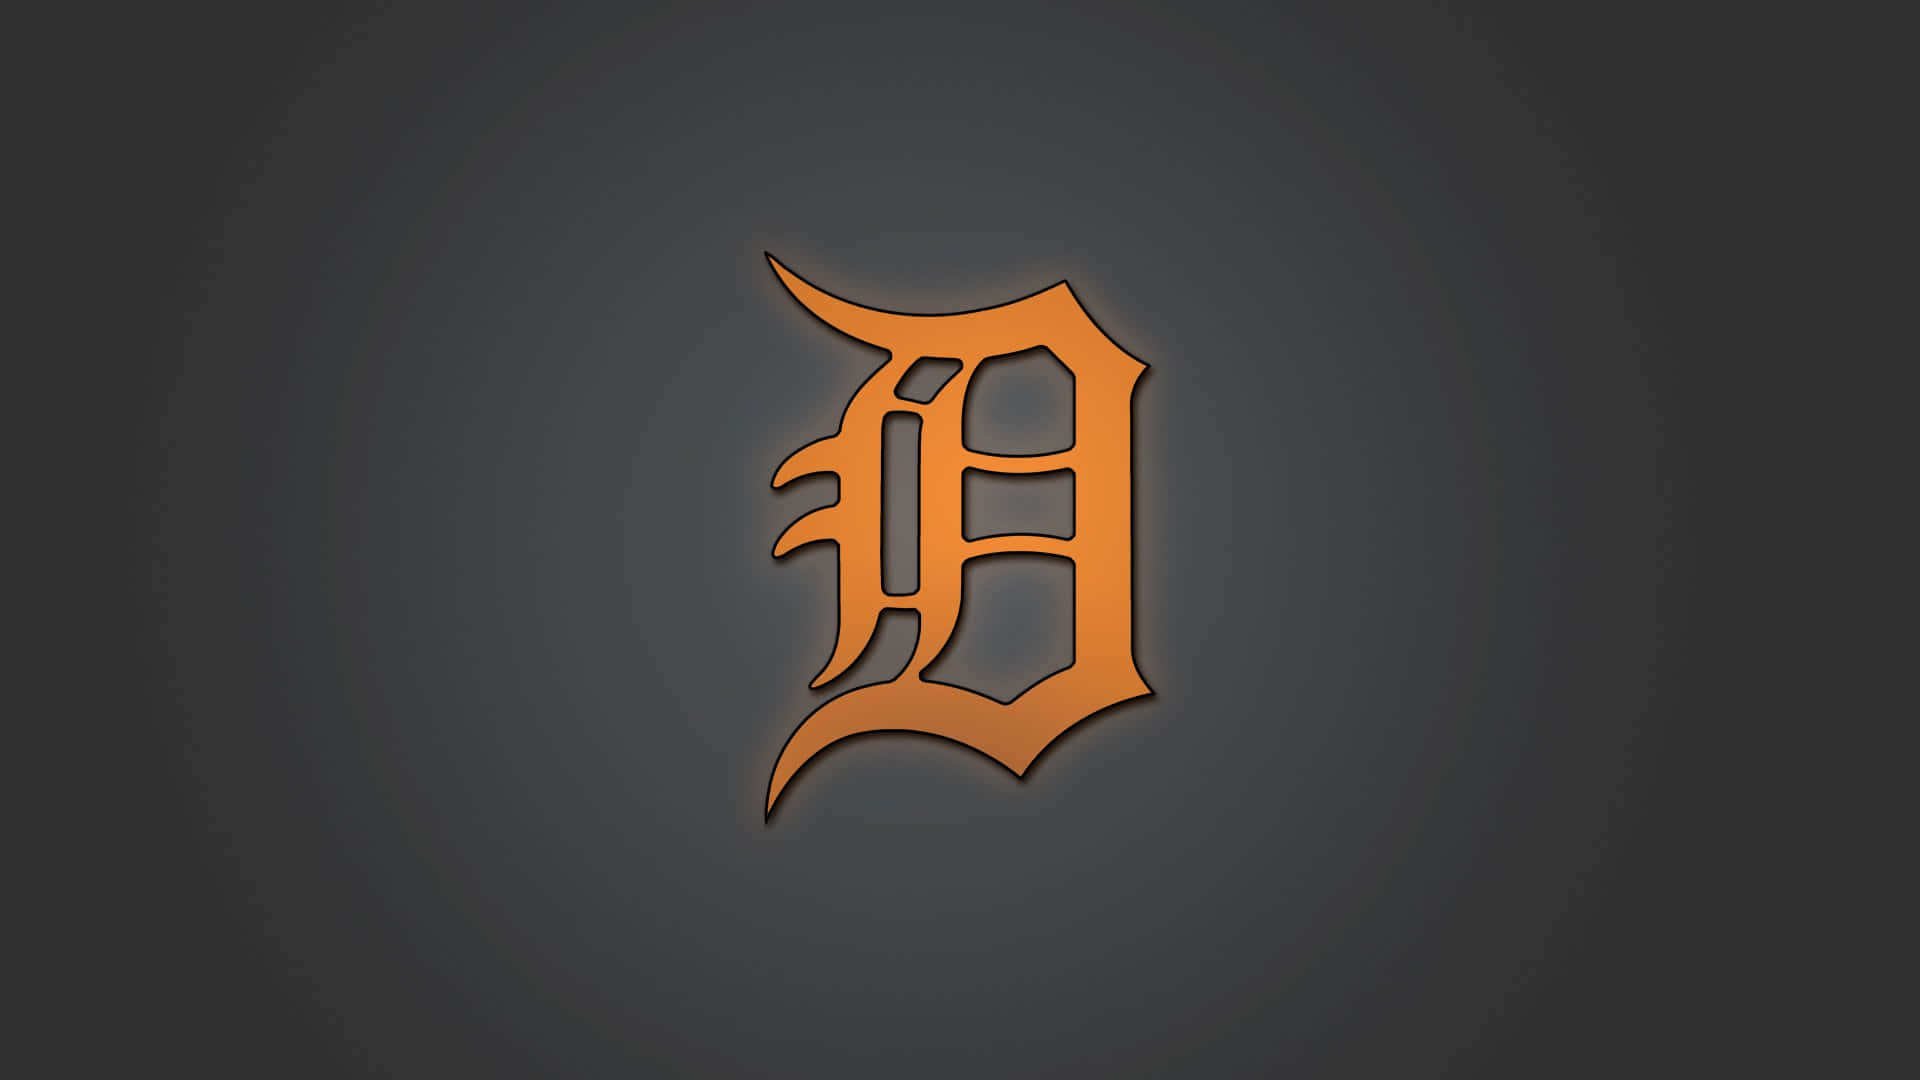 Logode Los Detroit Tigers En Fuente Gótica Naranja. Fondo de pantalla